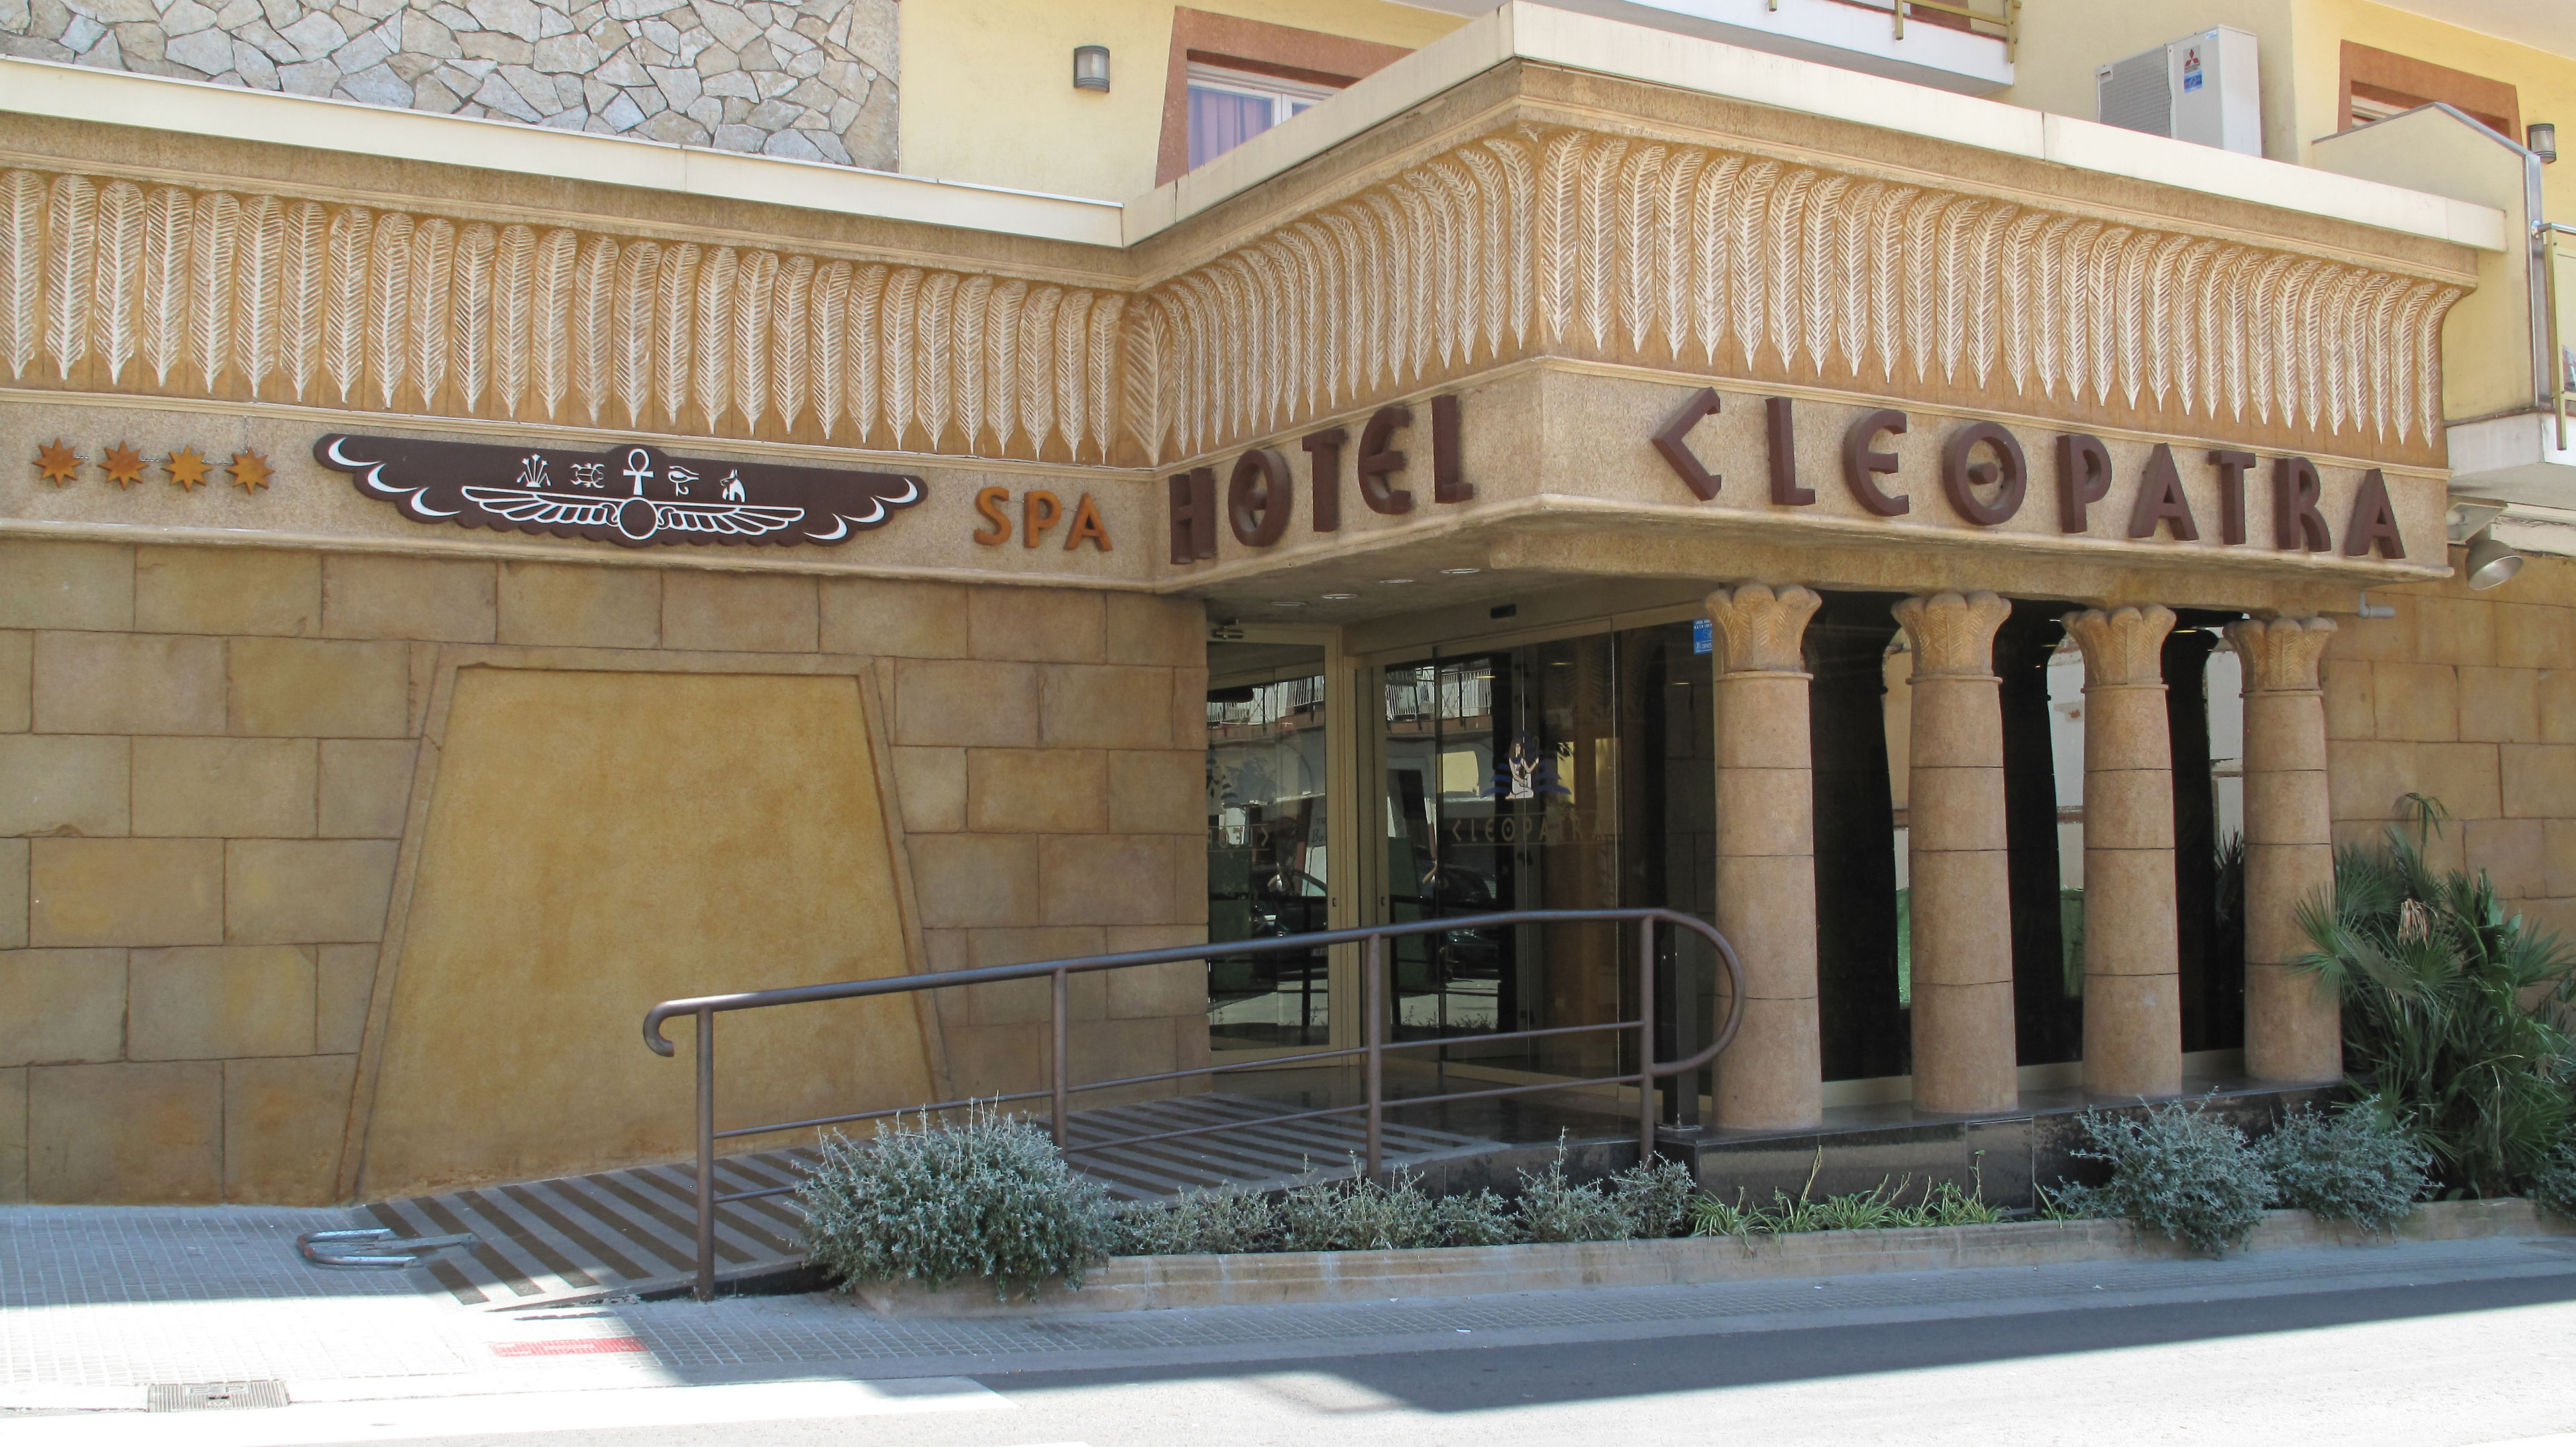 Cleopatra Hotel & Spa